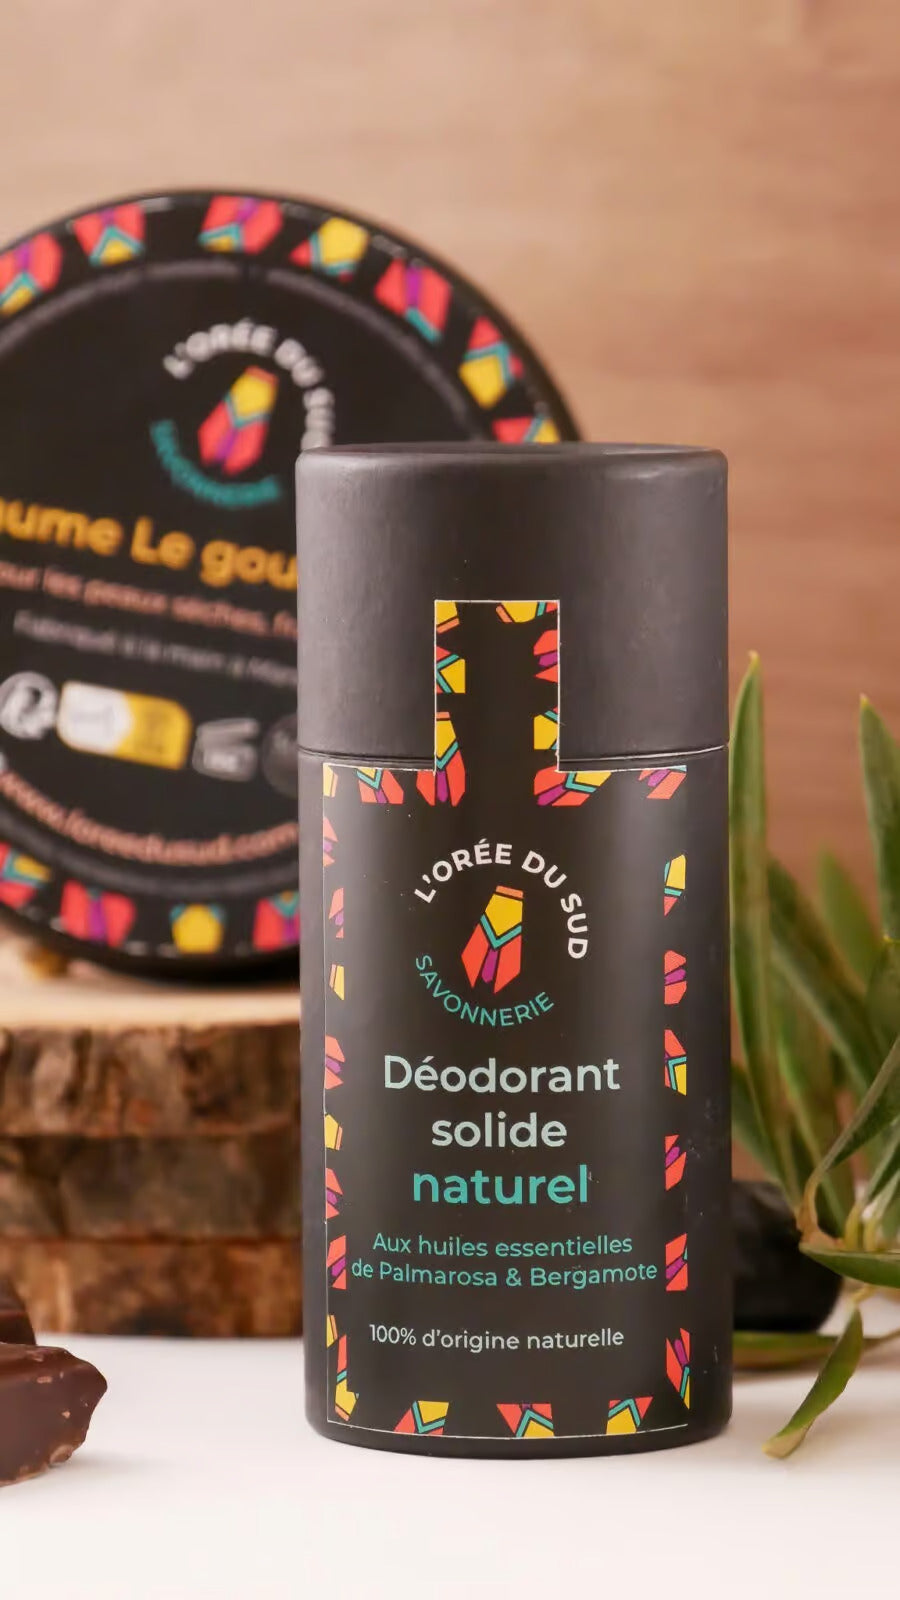 EMERO - Déodorant 100 % Naturel et Bio - Origine : France